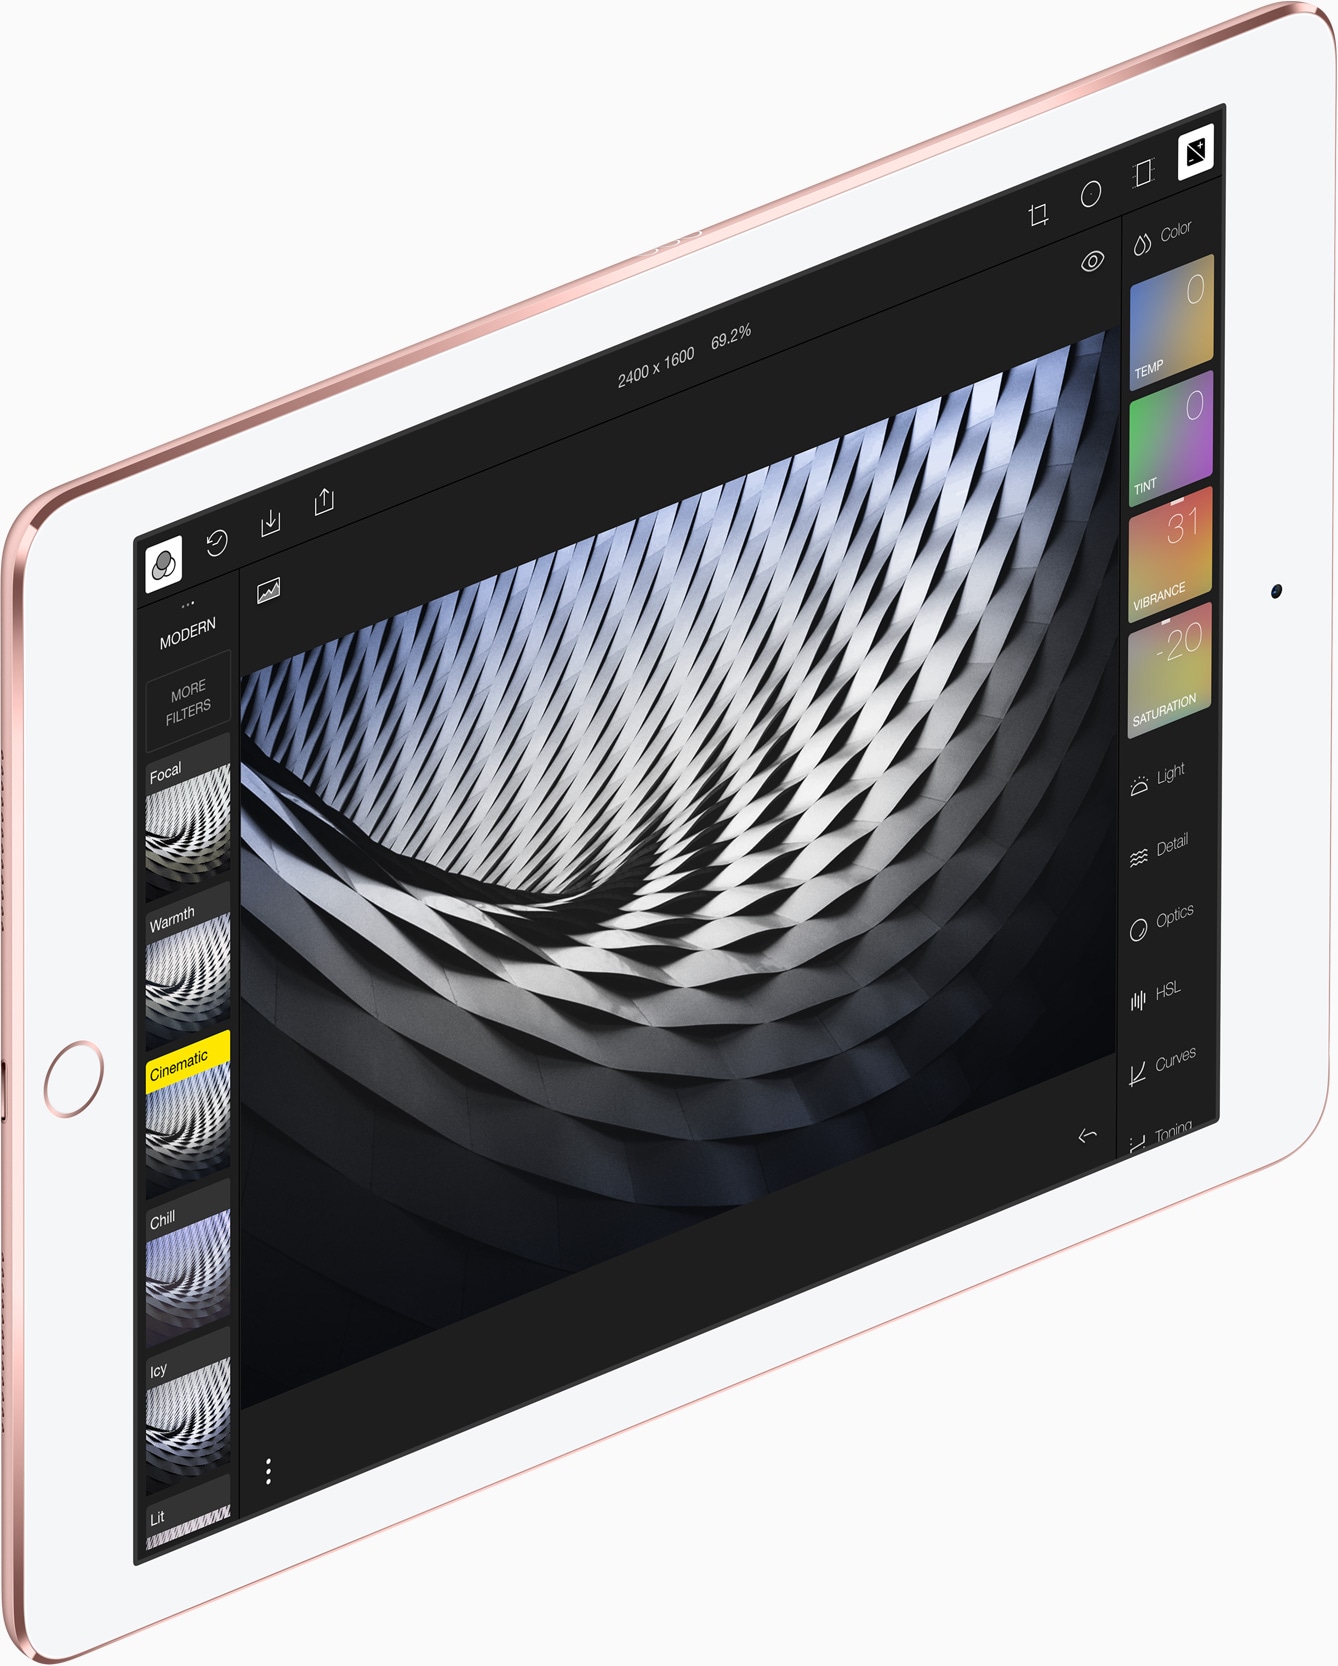 Tela Retina do iPad Pro de 9,7 polegadas